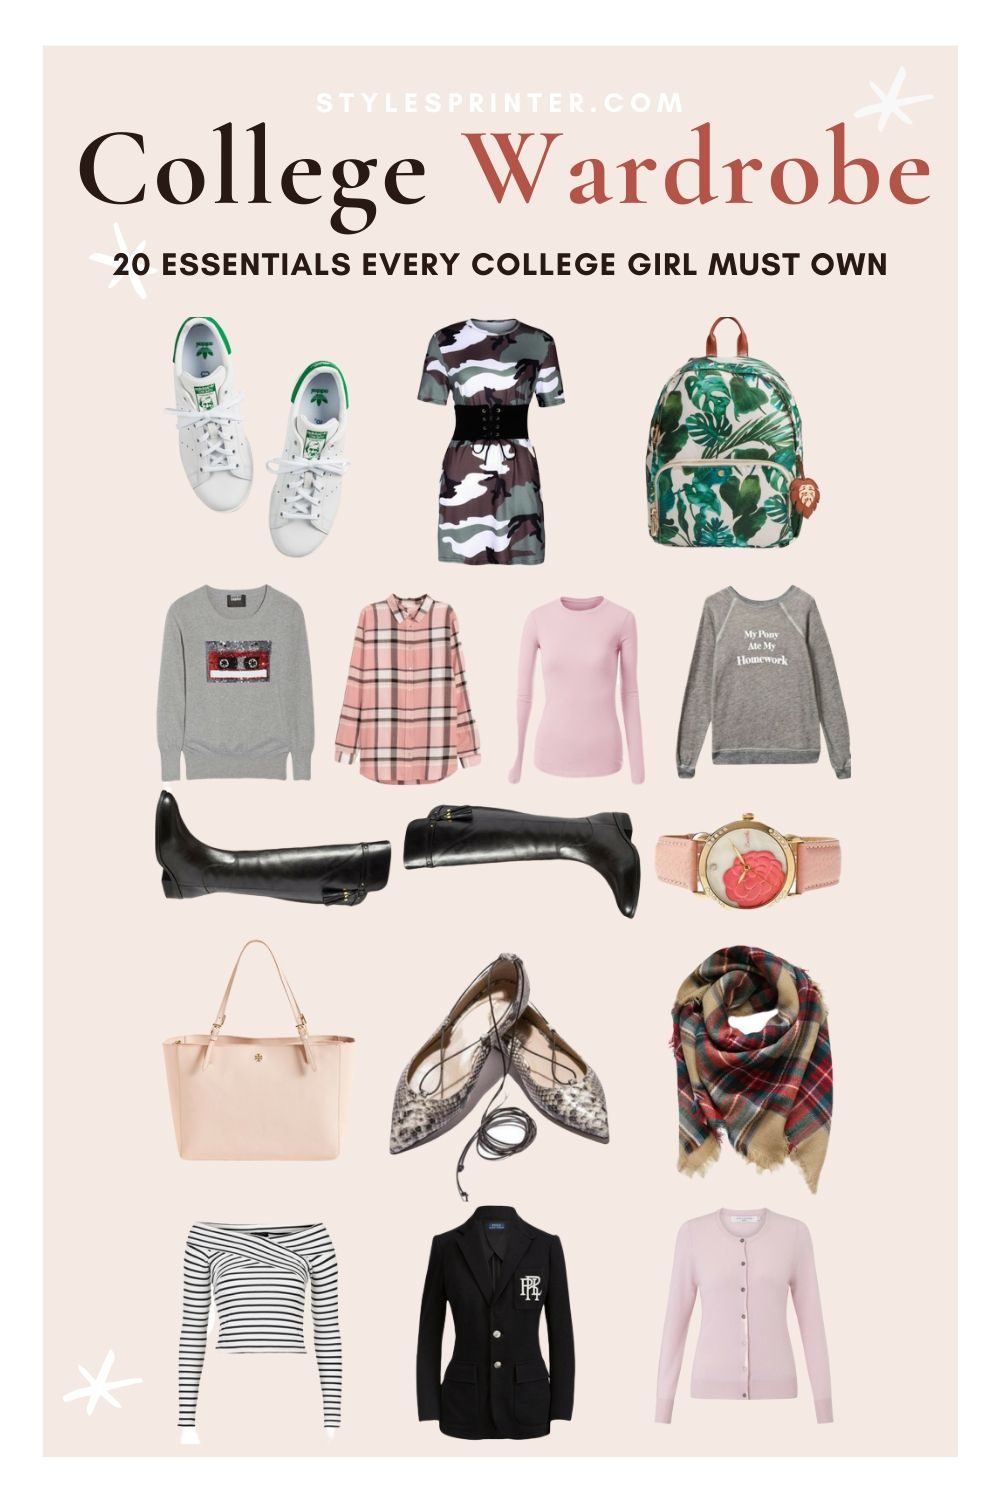 https://stylesprinter.com/wp-content/uploads/2017/08/20-Wardrobe-Essentials-Every-College-Girl-Must-Own-1000x1500.jpg